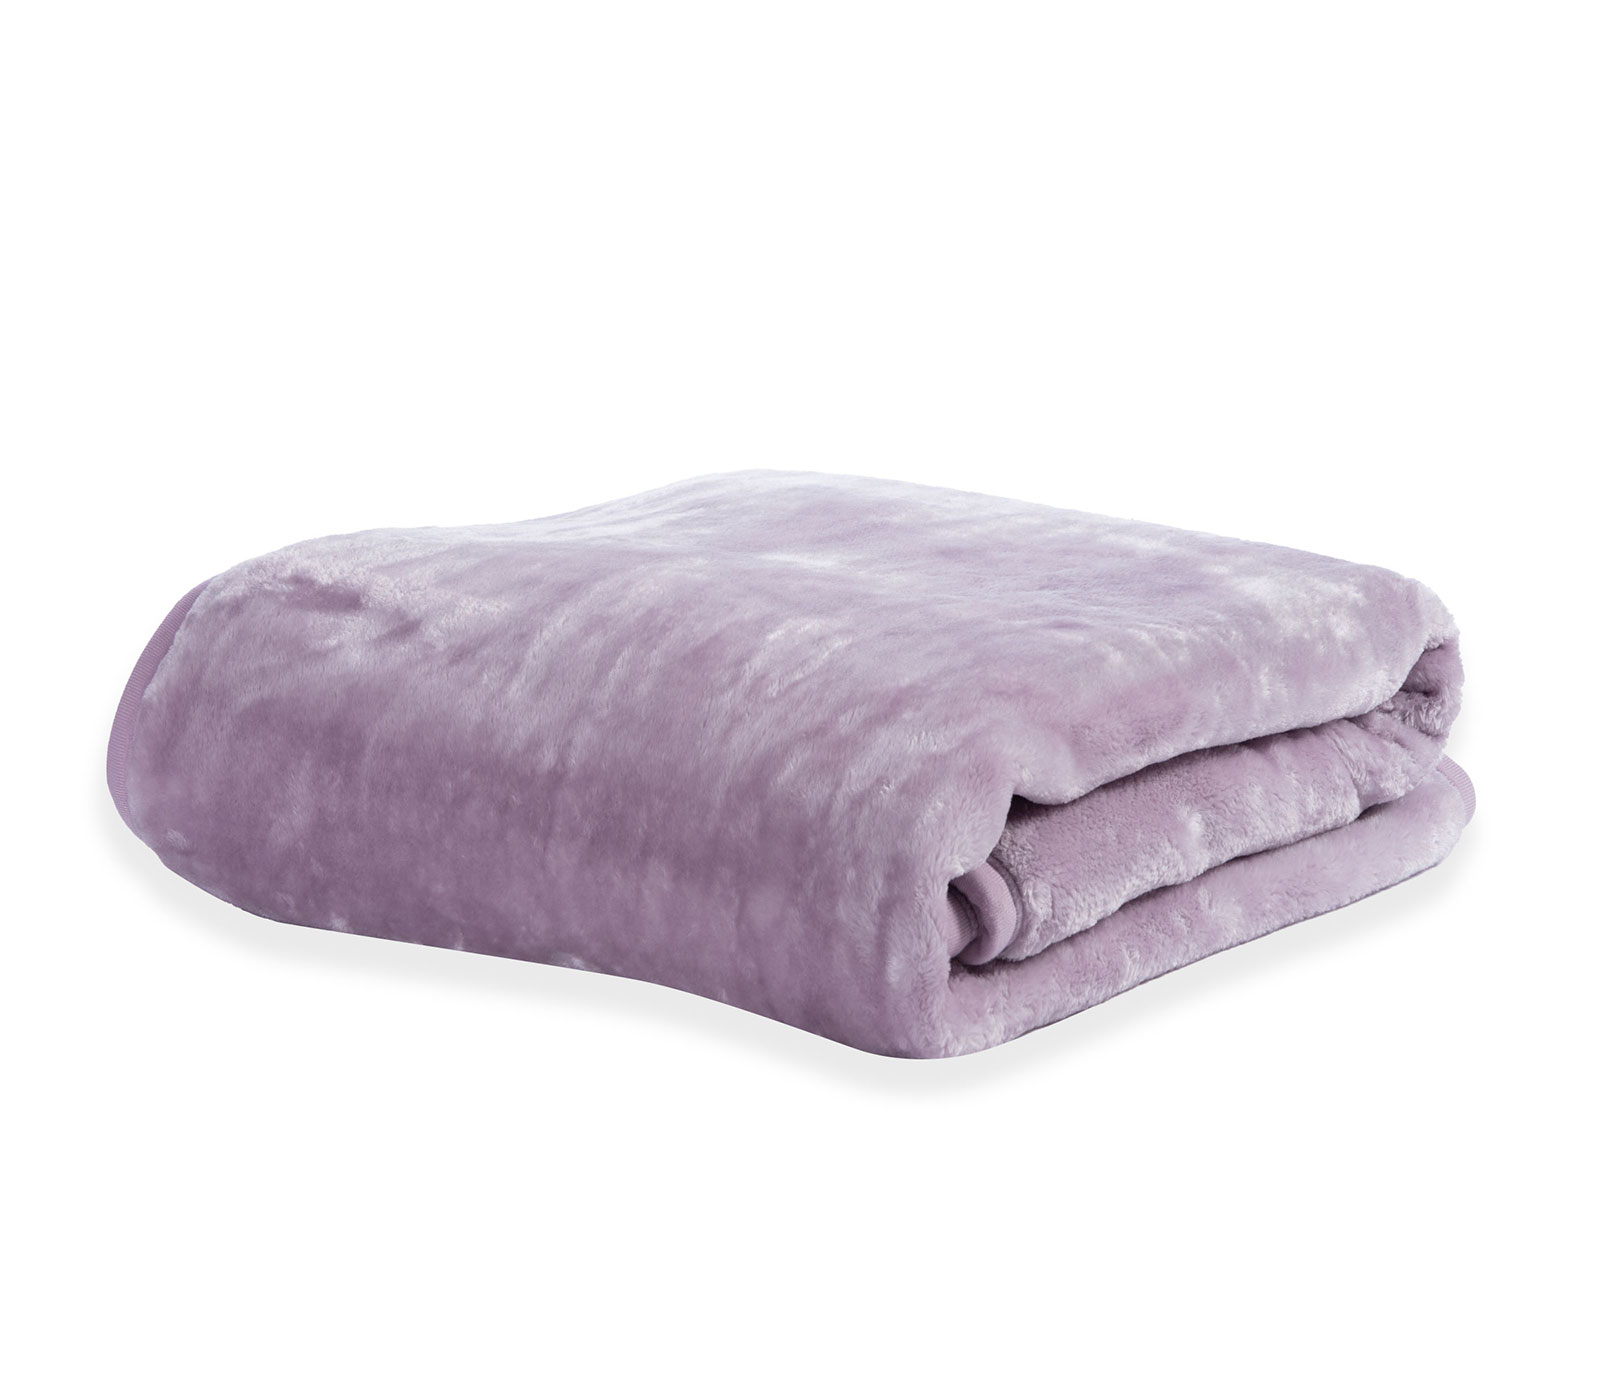 Κουβέρτα Μονή Nef-Nef Loft-22 160X220 Lilac